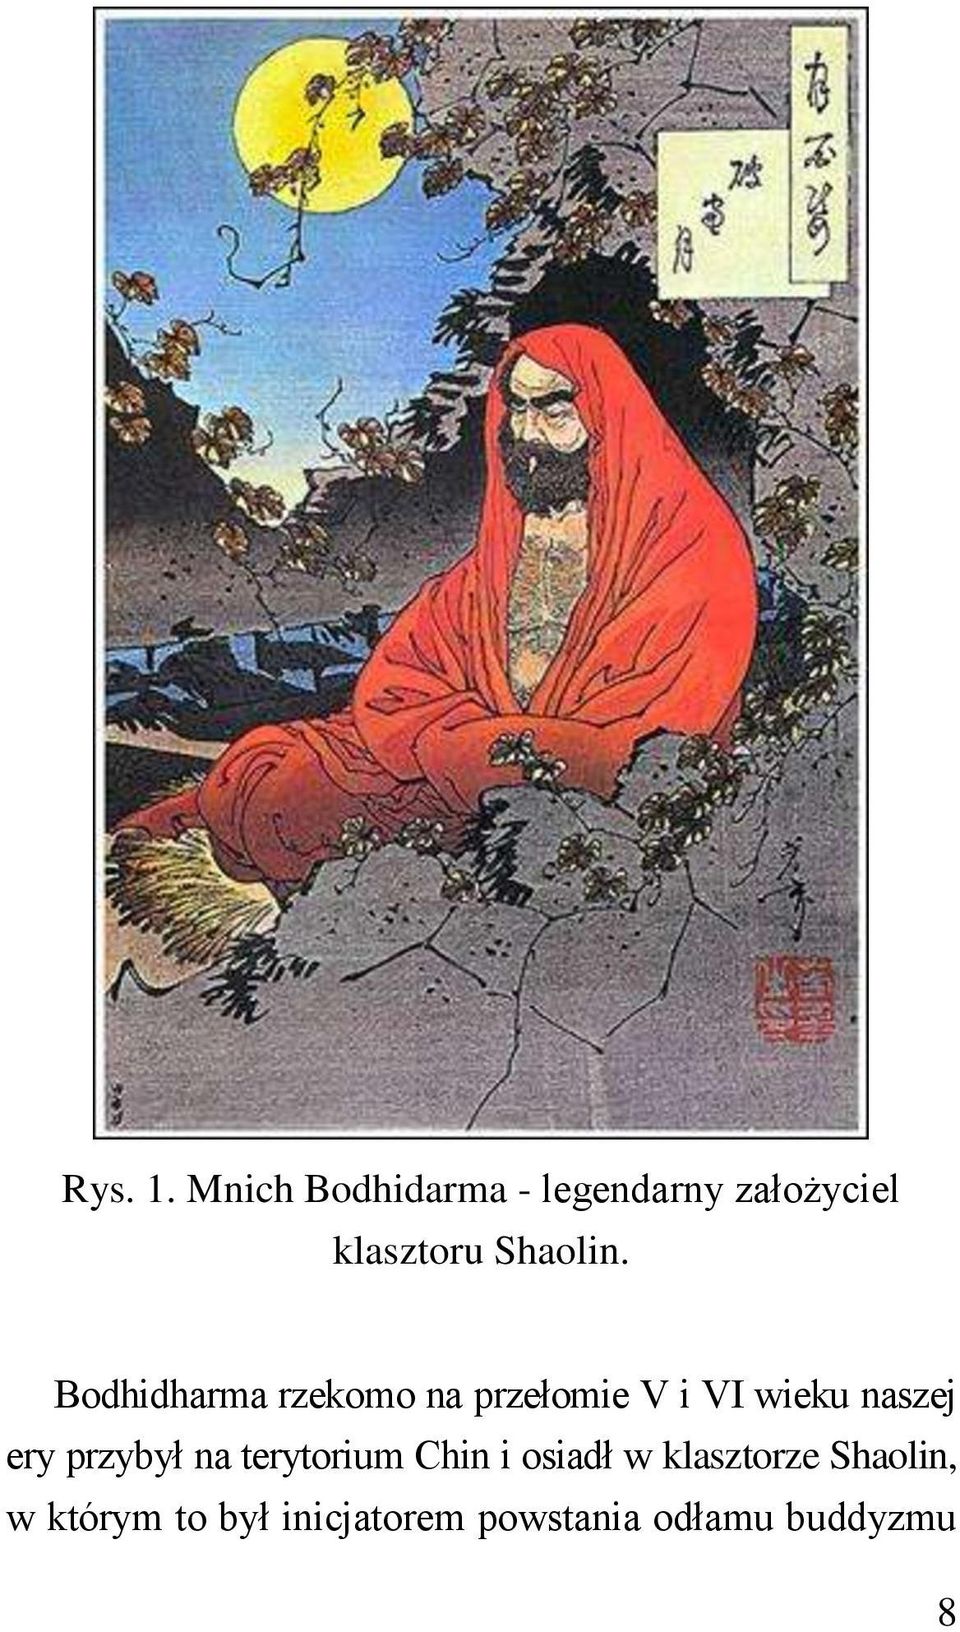 Bodhidharma rzekomo na przełomie V i VI wieku naszej ery